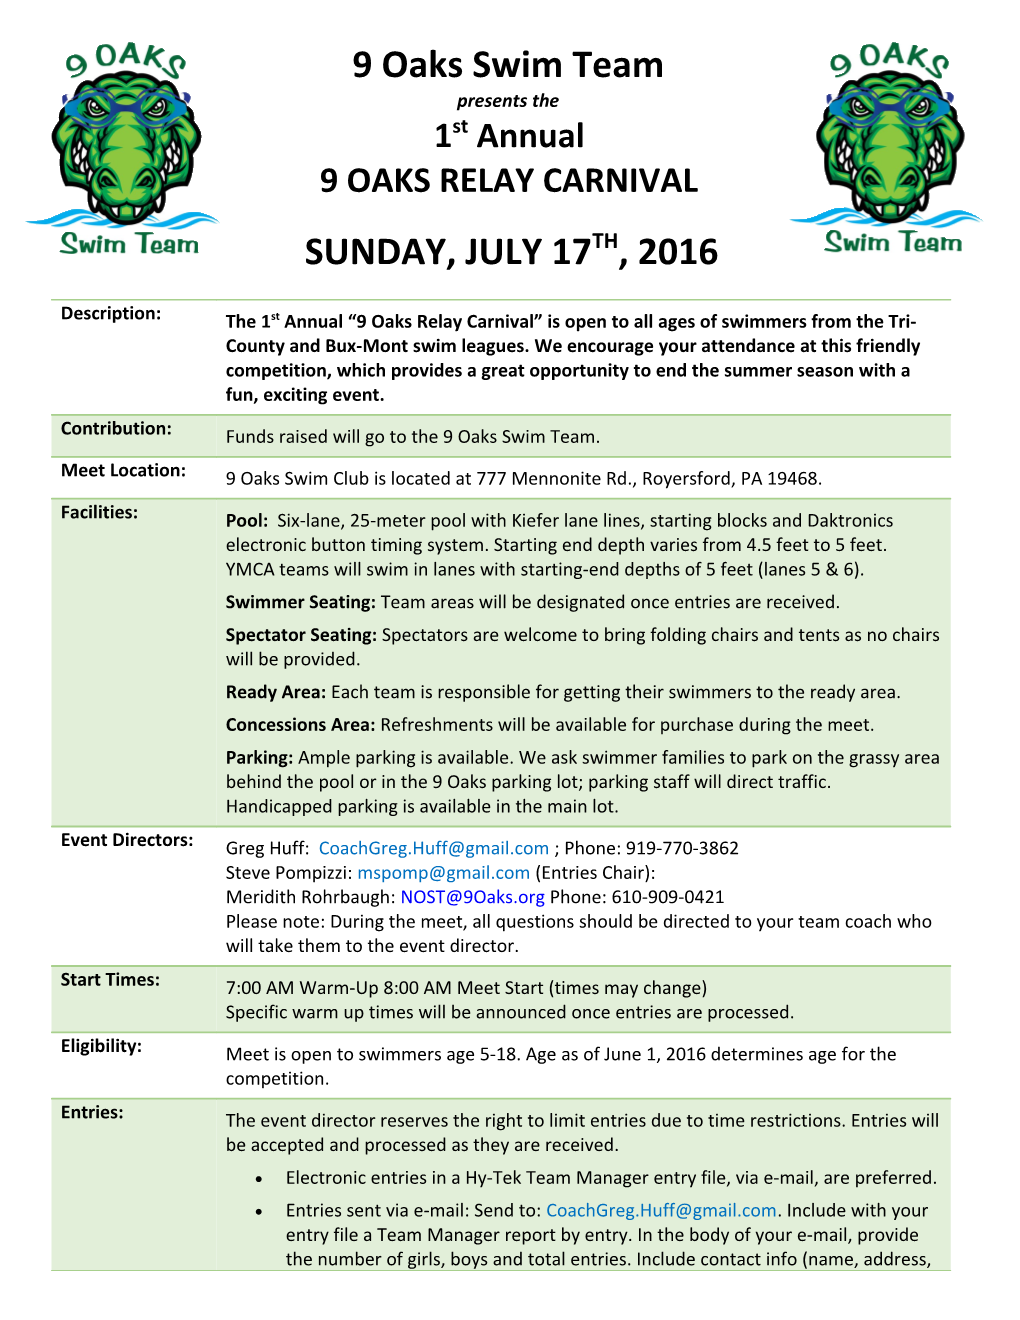 9 Oaks Relay Carnival